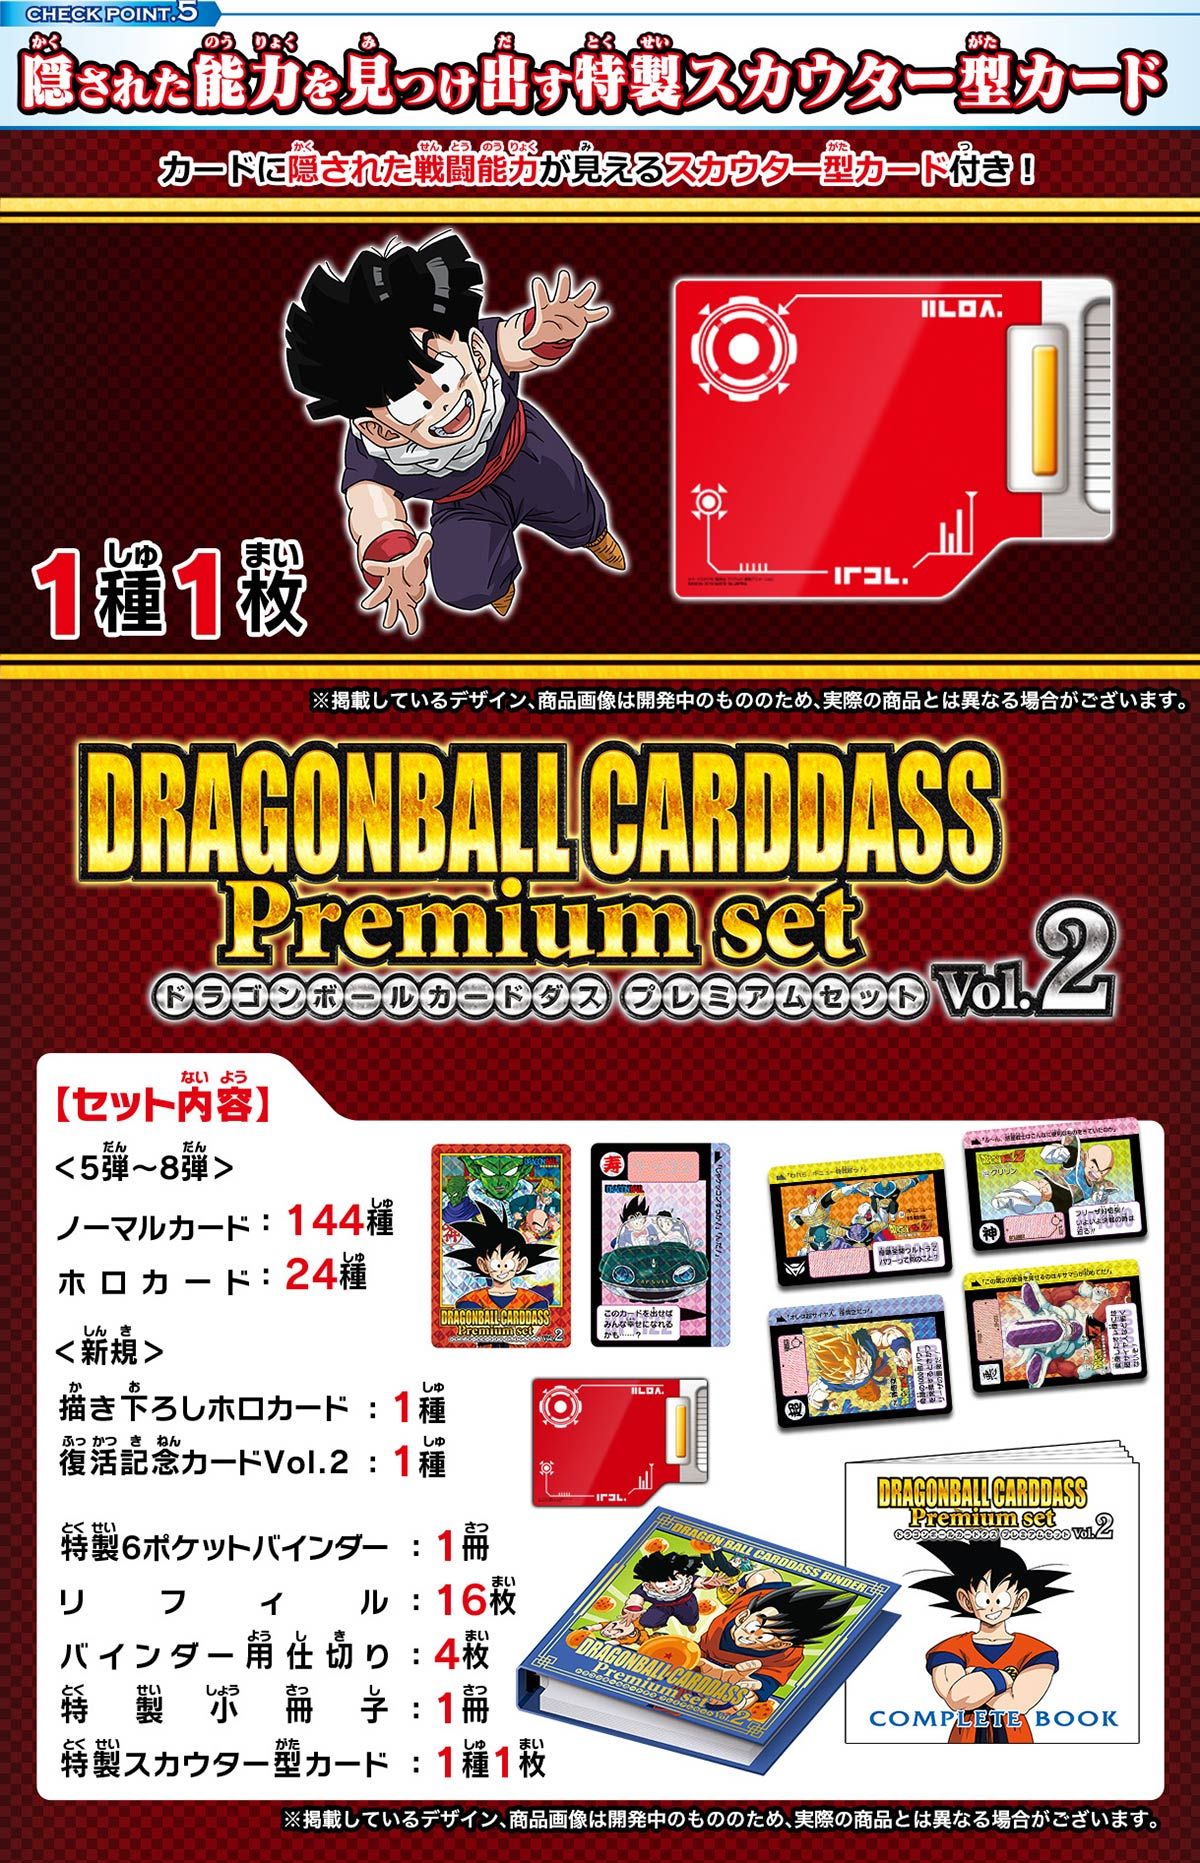 希少 即決 No272 フリーザ キラ 本弾 ドラゴンボールカードダス Premium set Vol.